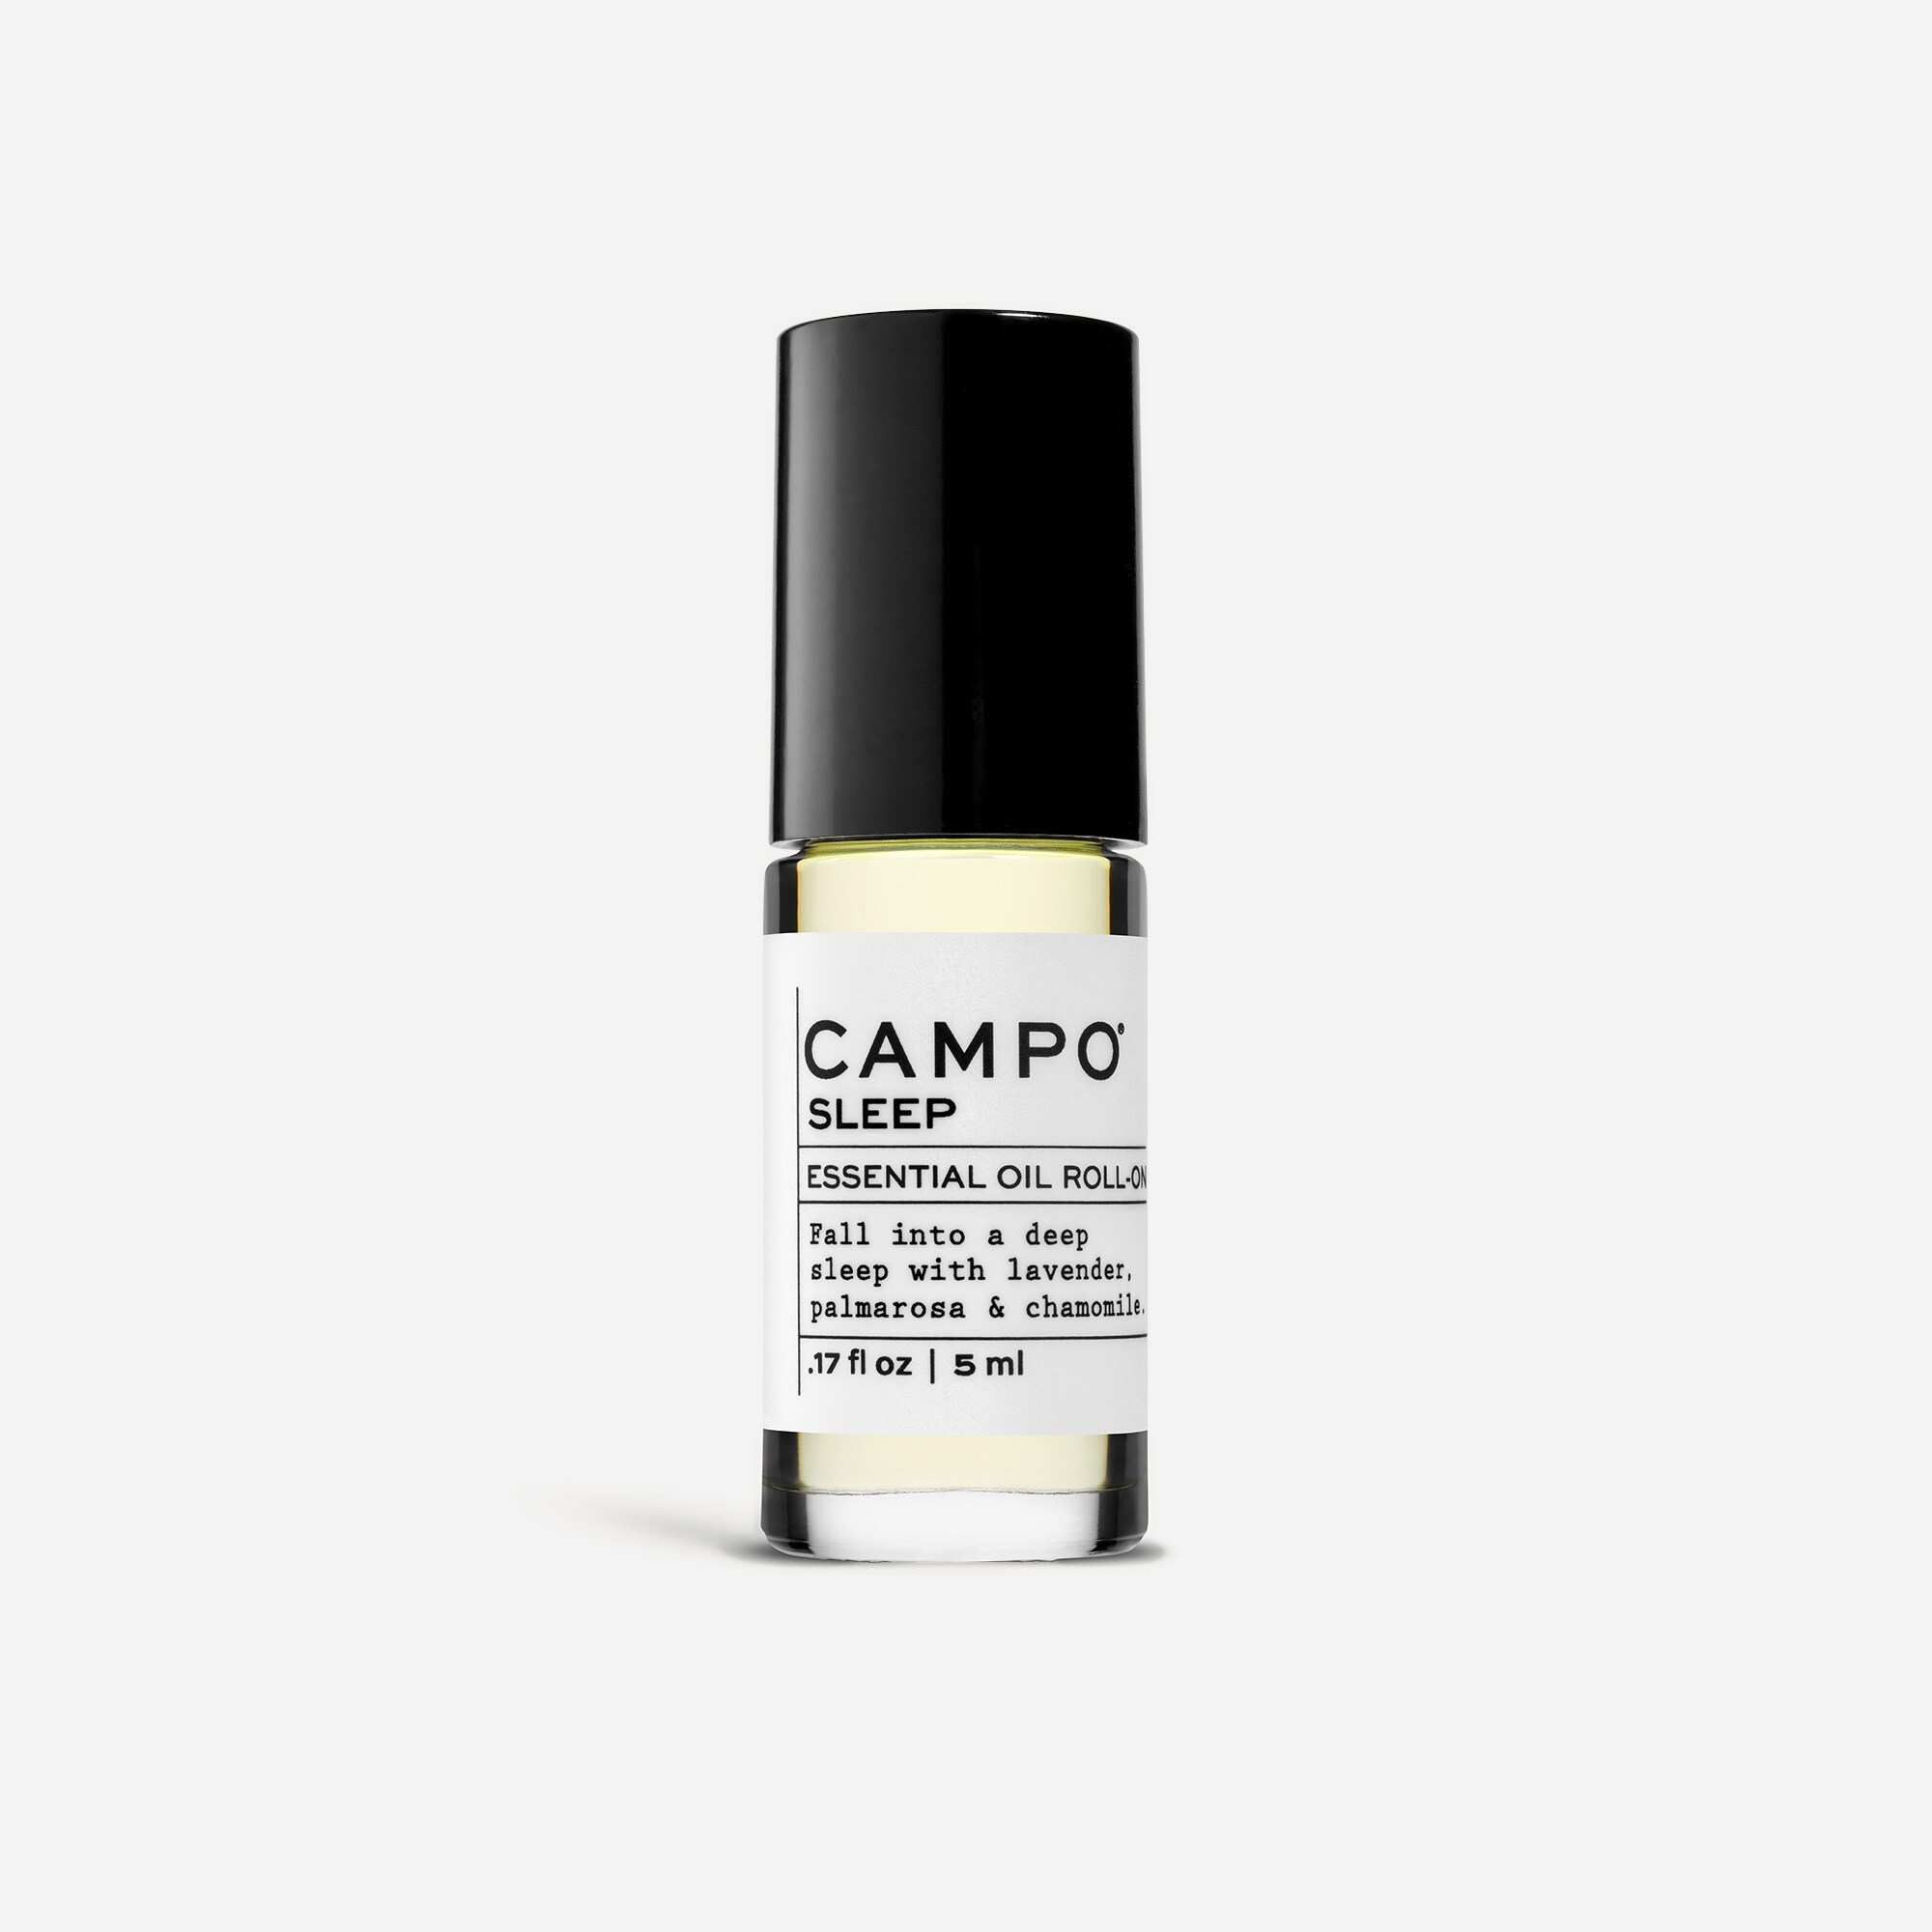  CAMPO® SLEEP roll-on oil